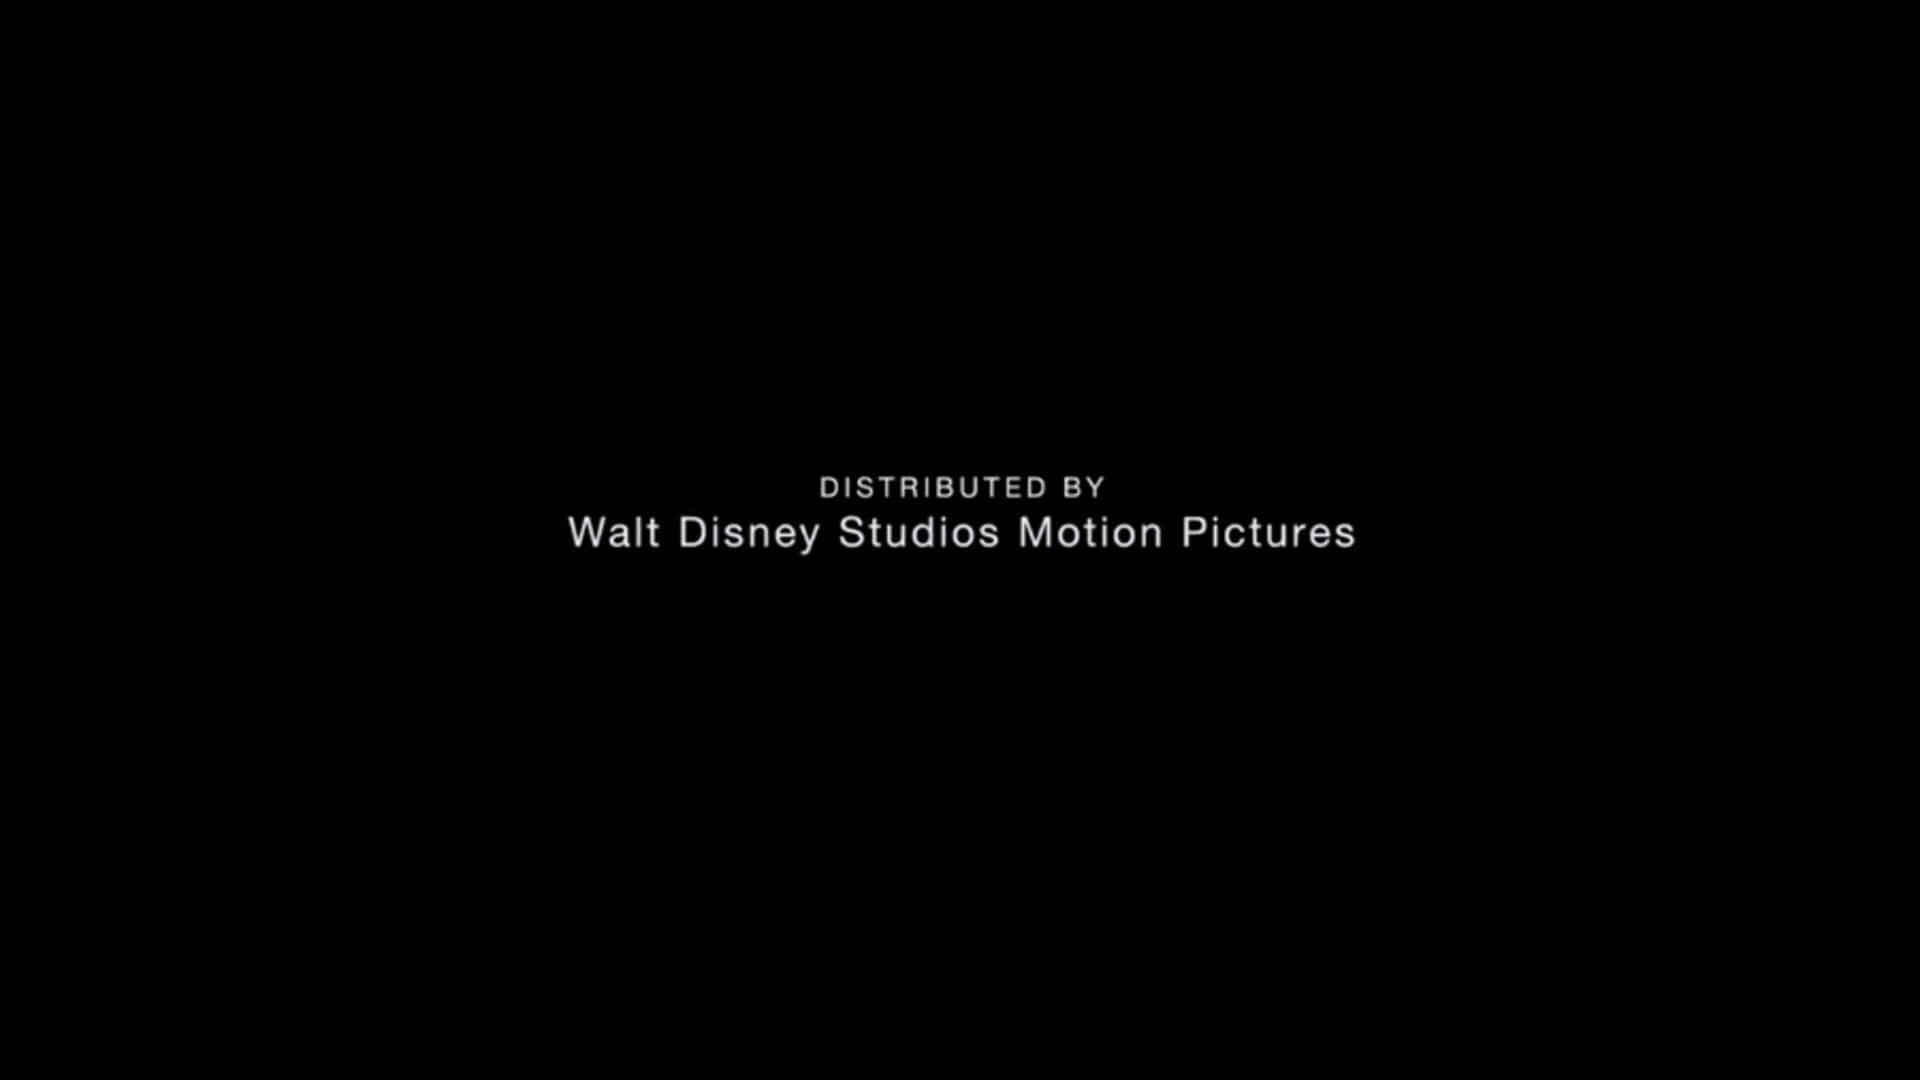 Lamagia Dei Film Di Walt Disney Studios Motion Pictures